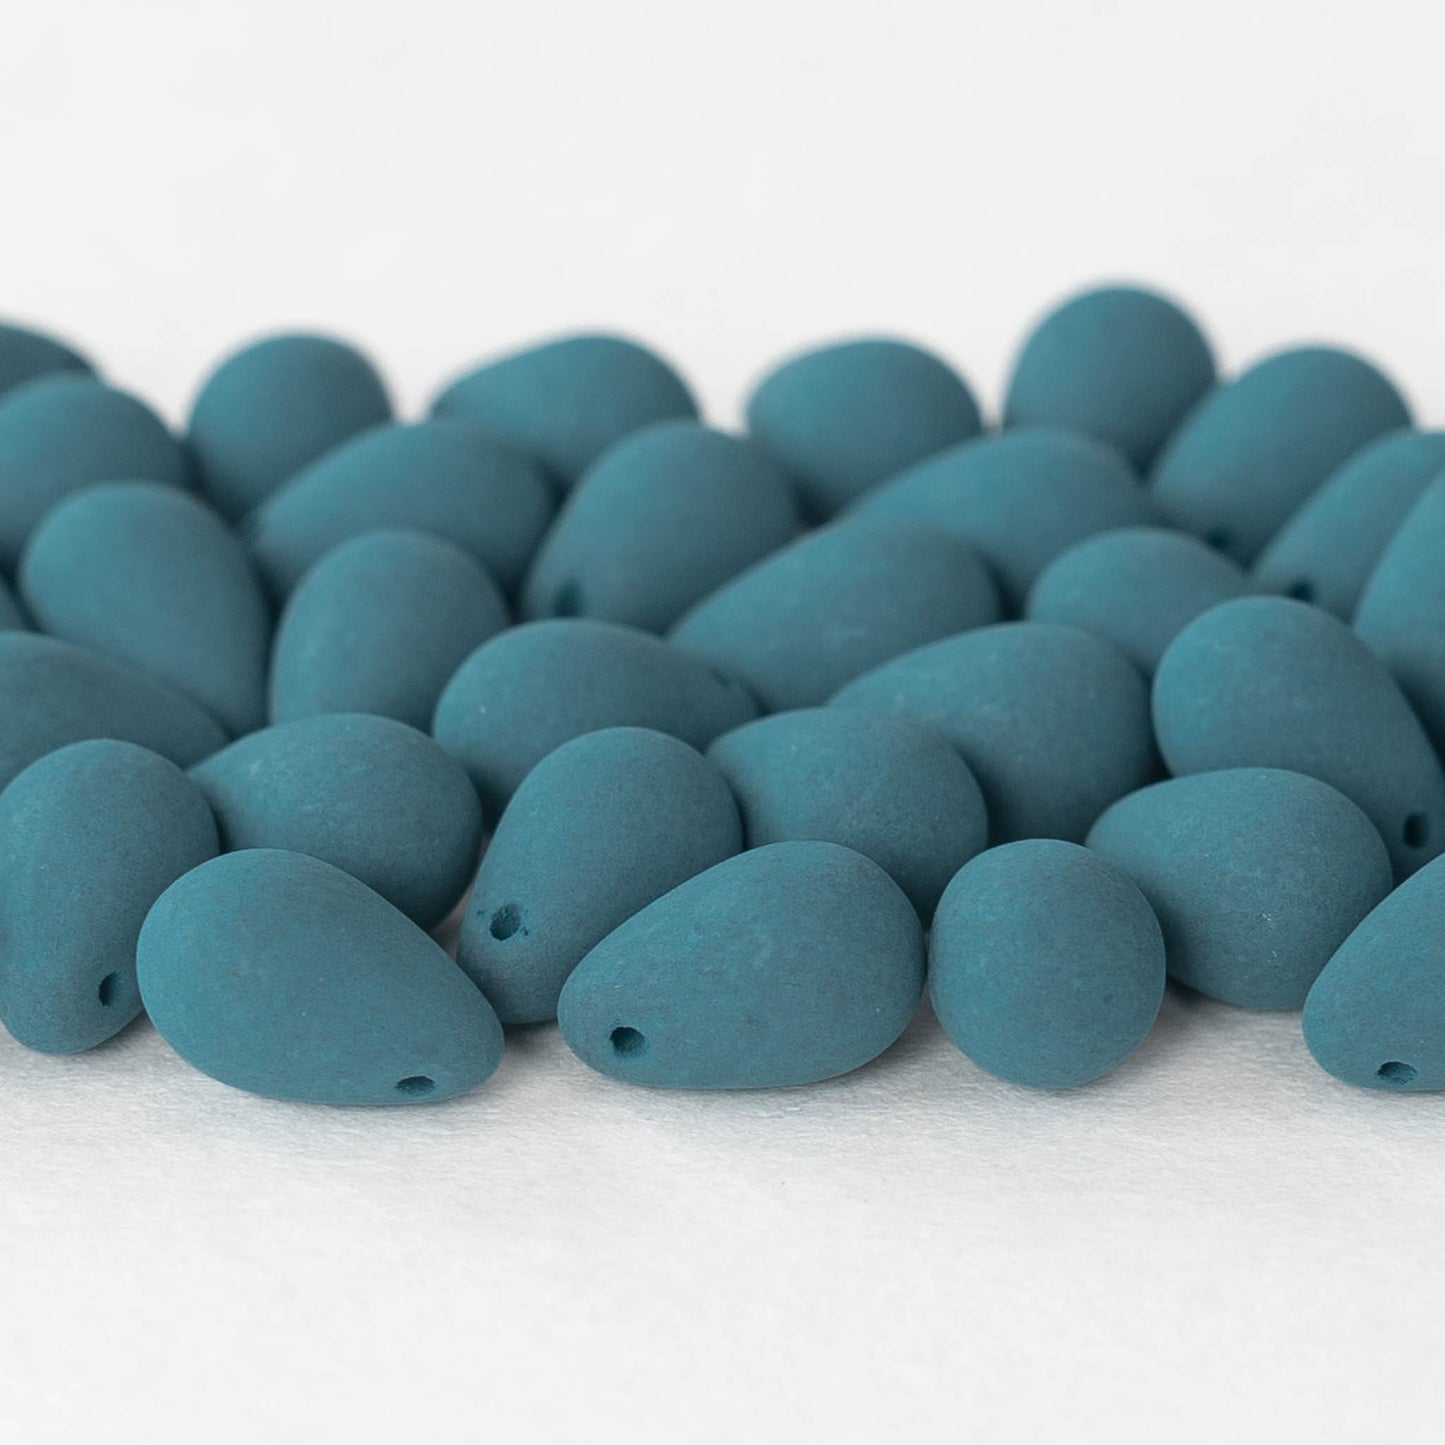 6x9mm Glass Teardrop Beads - Opaque Teal Matte- 50 Beads